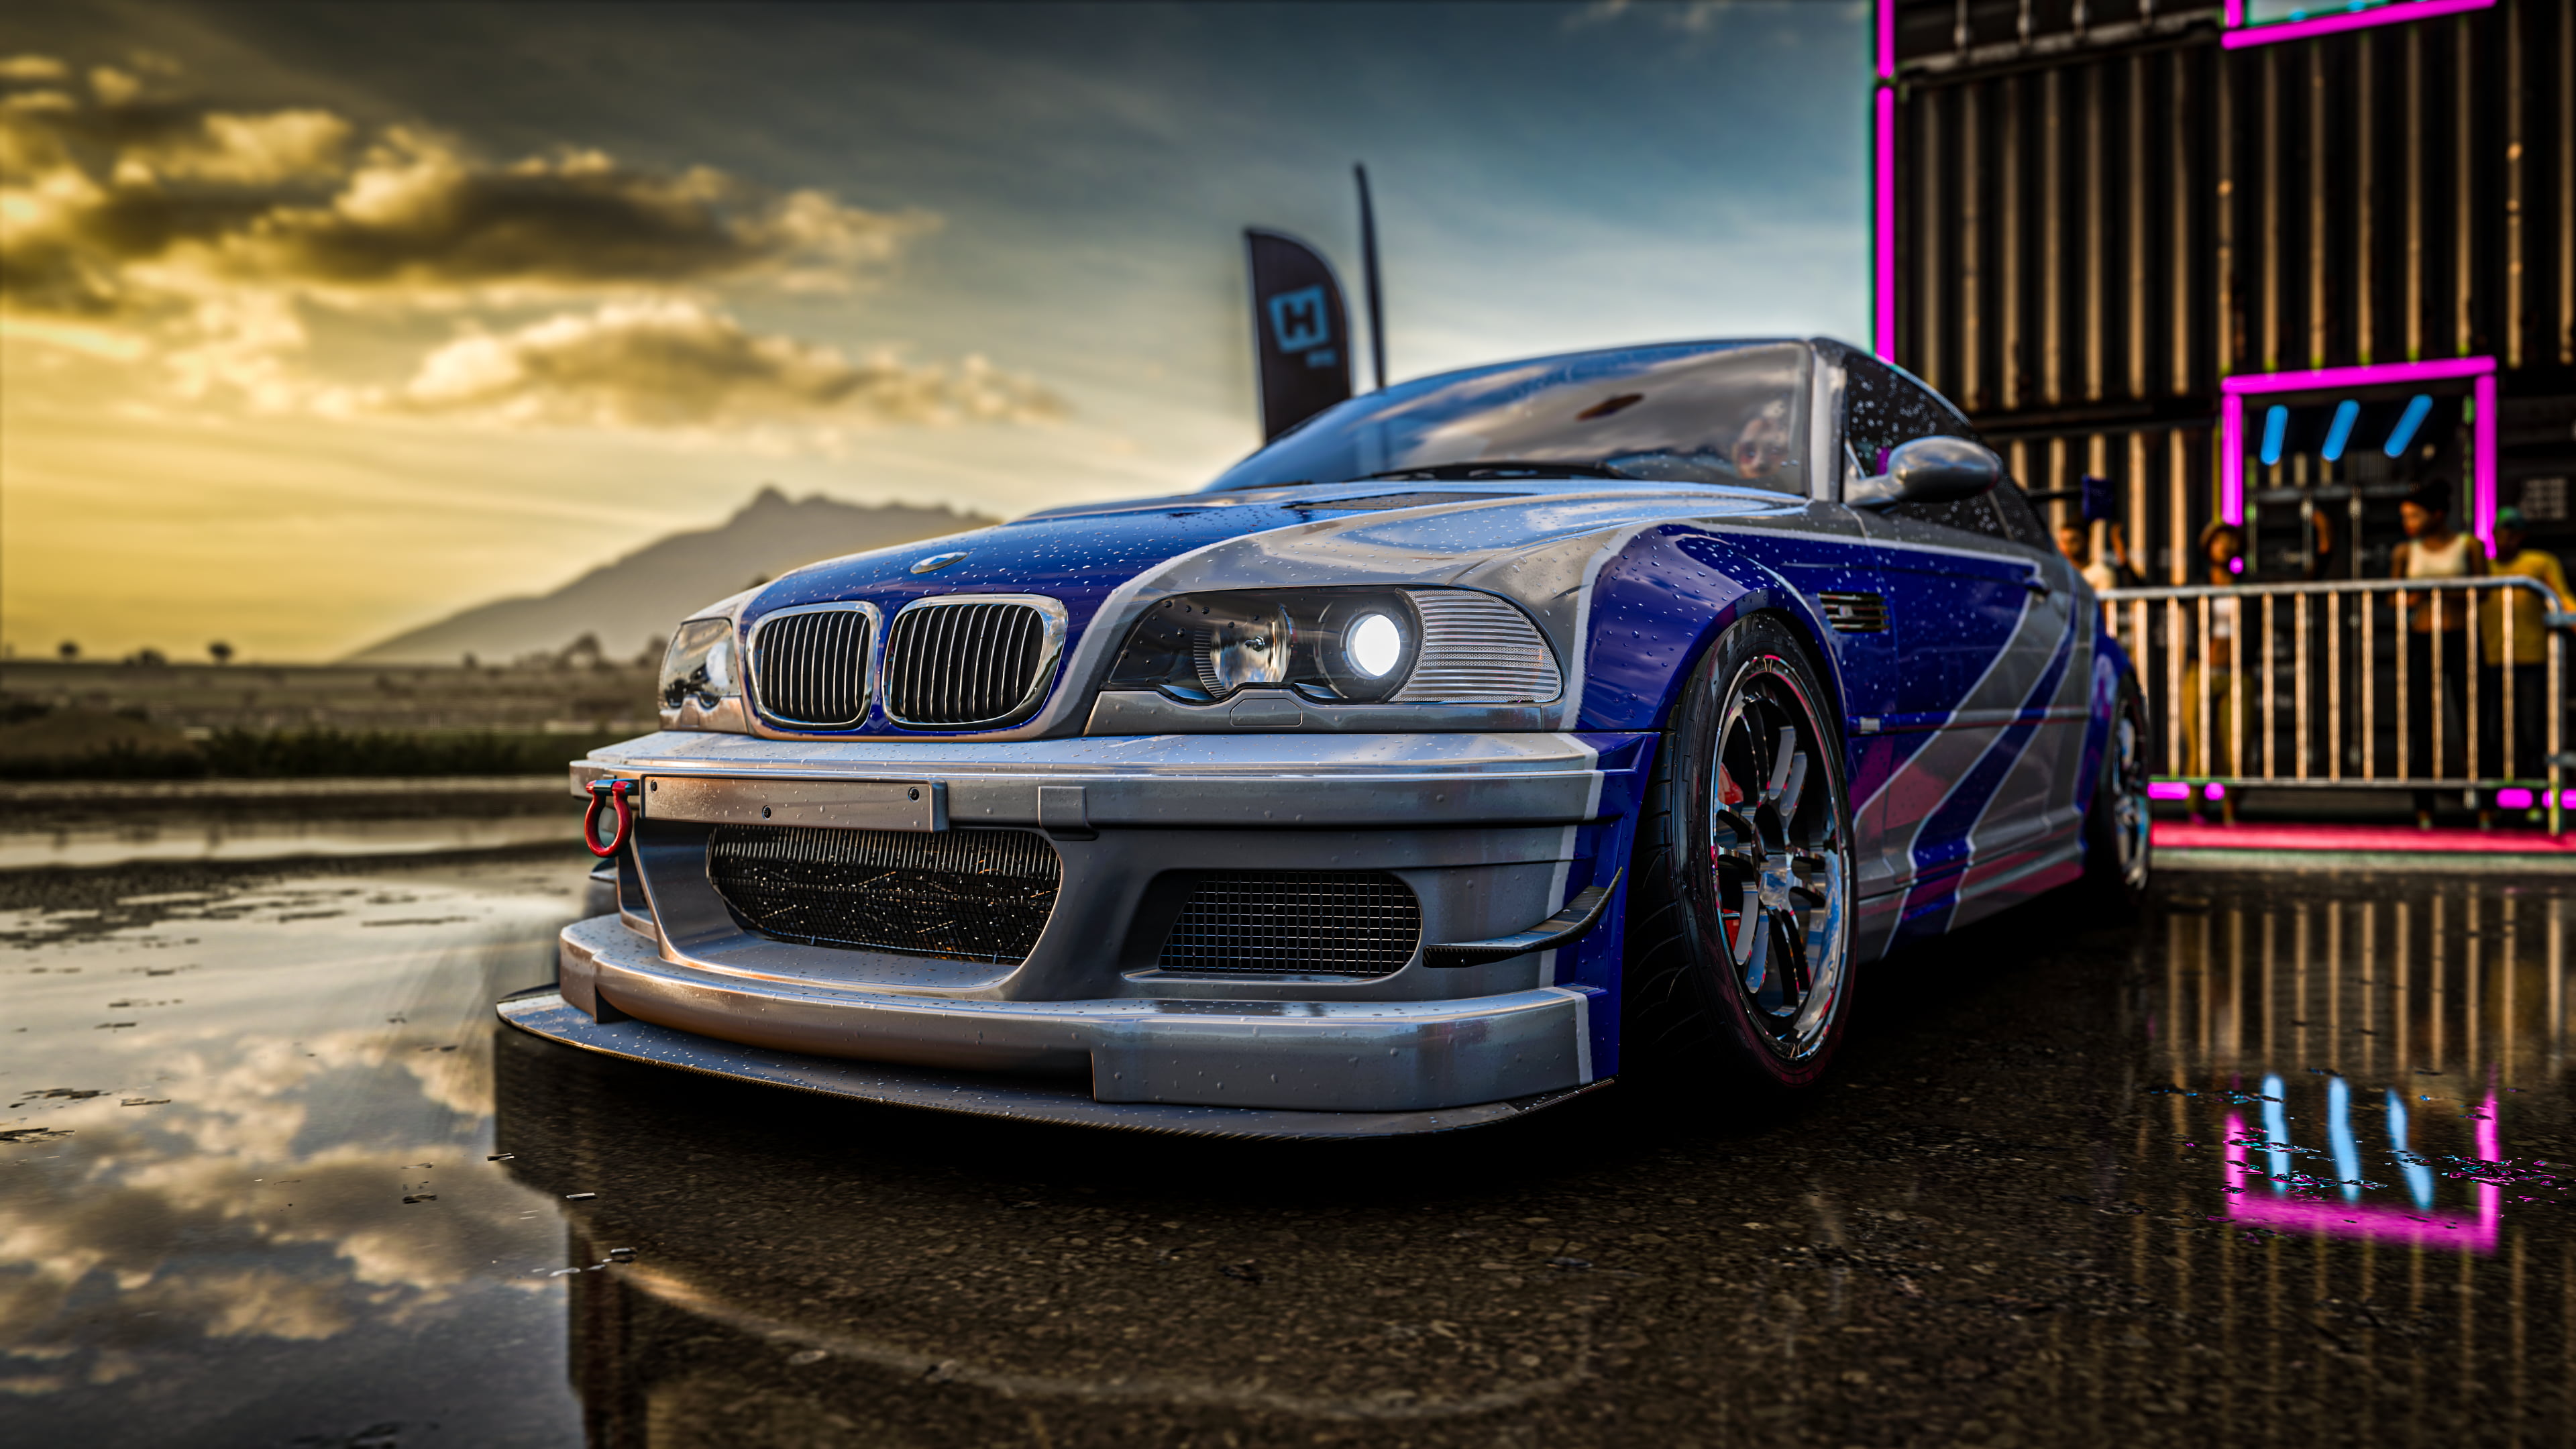 BMW M3 E46 GTR, BMW M3 GTR, Forza Horizon 5, drift, sunset